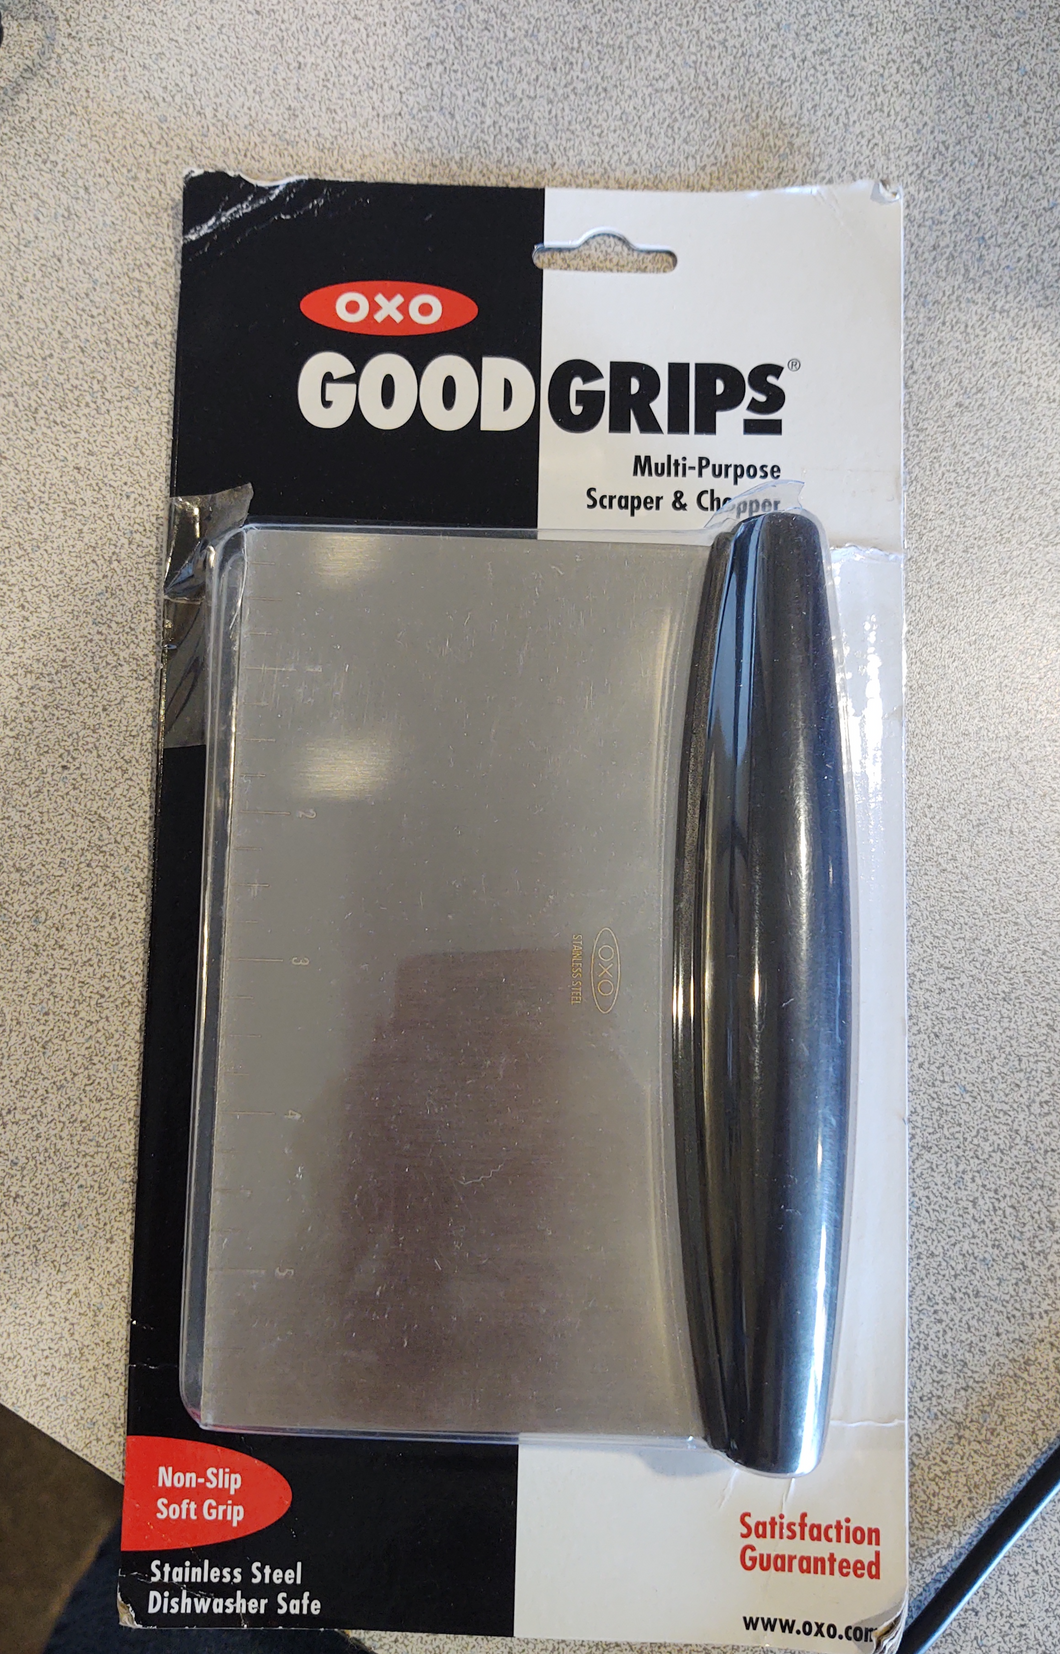 Good Grips Multi-Purpose Scraper/Chopper